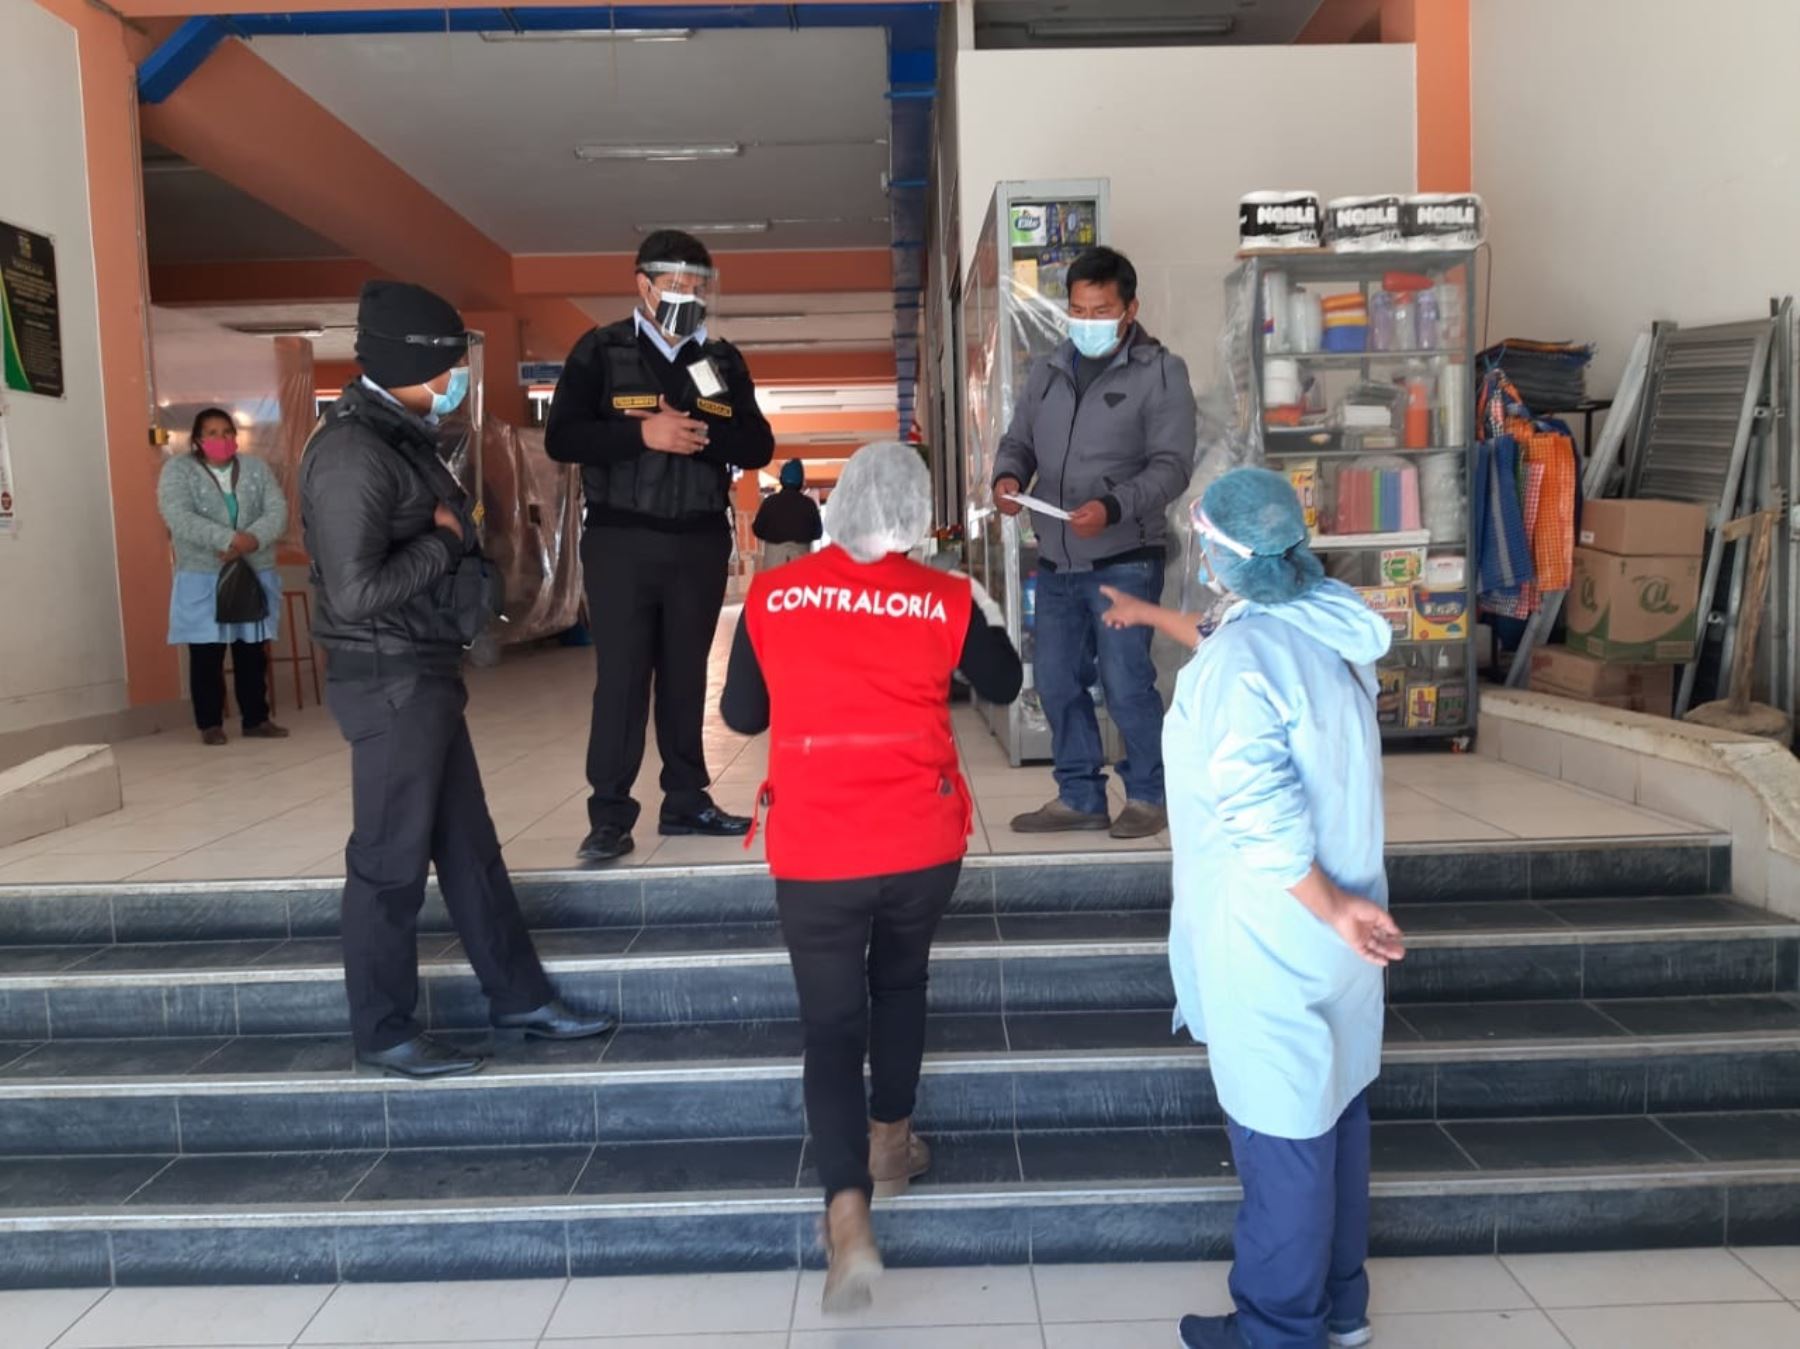 La Contraloría advirtió del riesgo de contagio en el mercado de abastos del distrito de Pampas, en Huancavelica, debido a la falta de implementación de medidas de prevención. ANDINA/Difusión